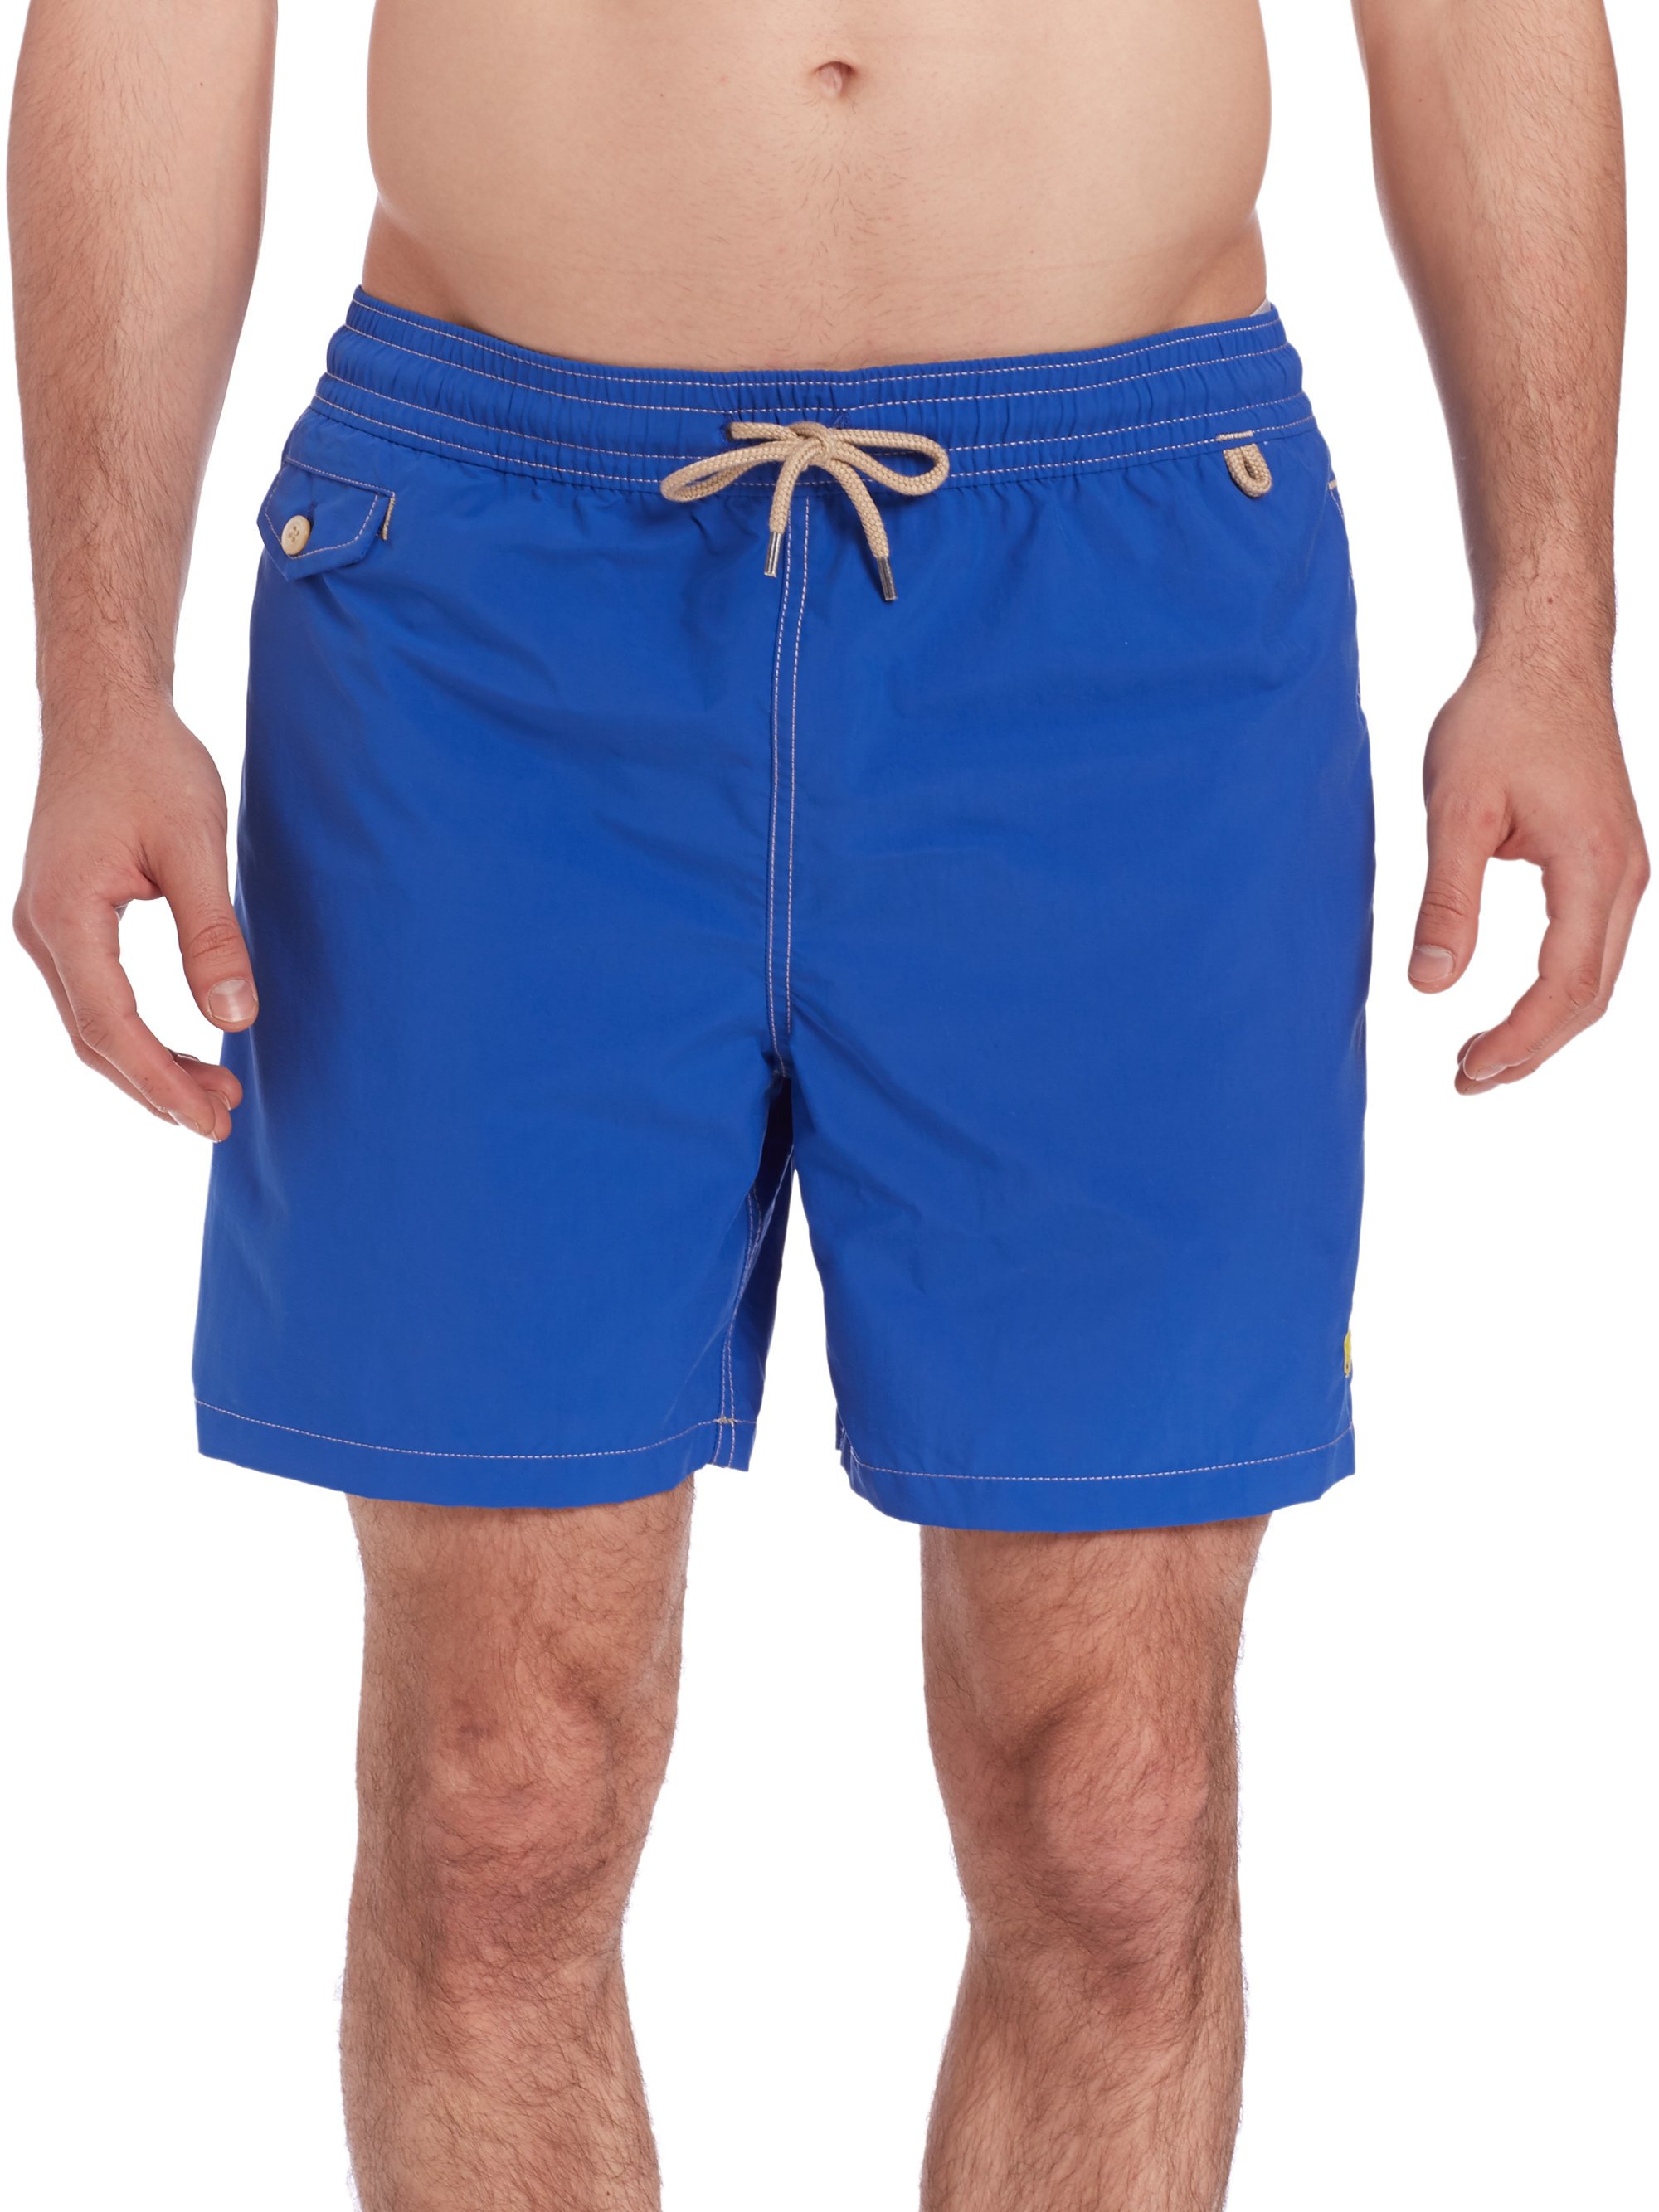 Lyst - Polo Ralph Lauren Traveler Swim Shorts in Blue for Men